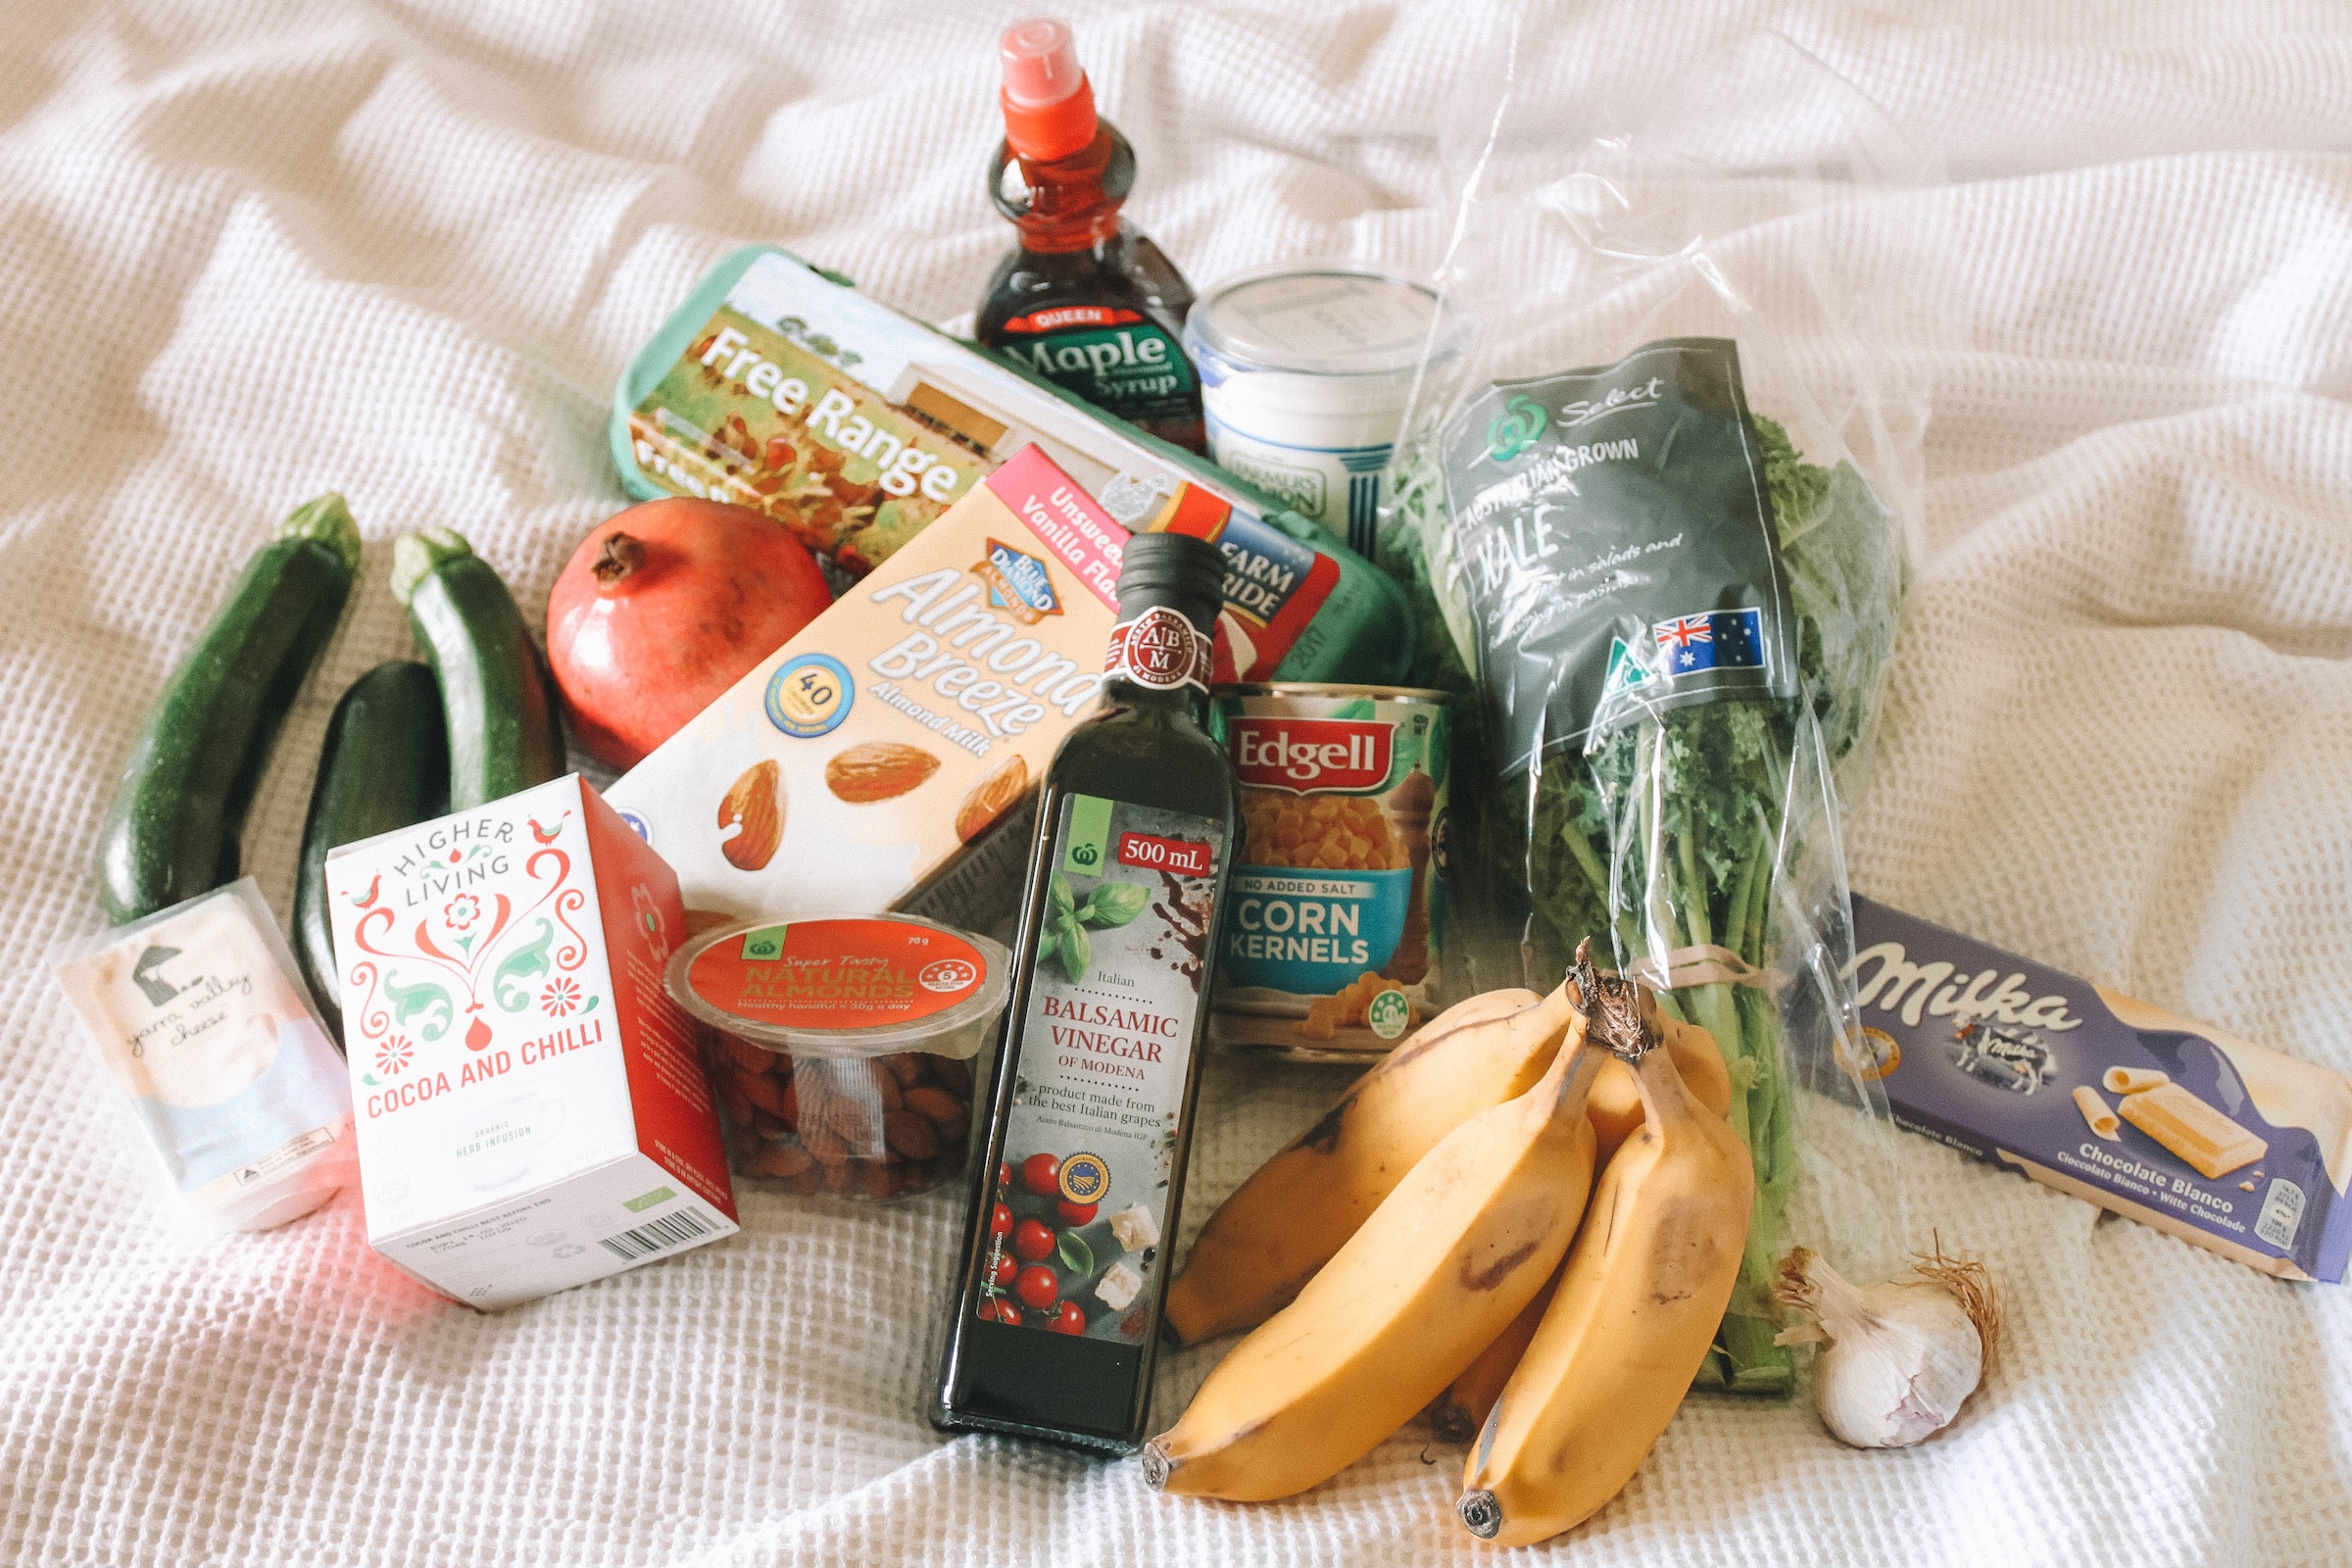 Fordelene ved at handle hos Økologisk Supermarked